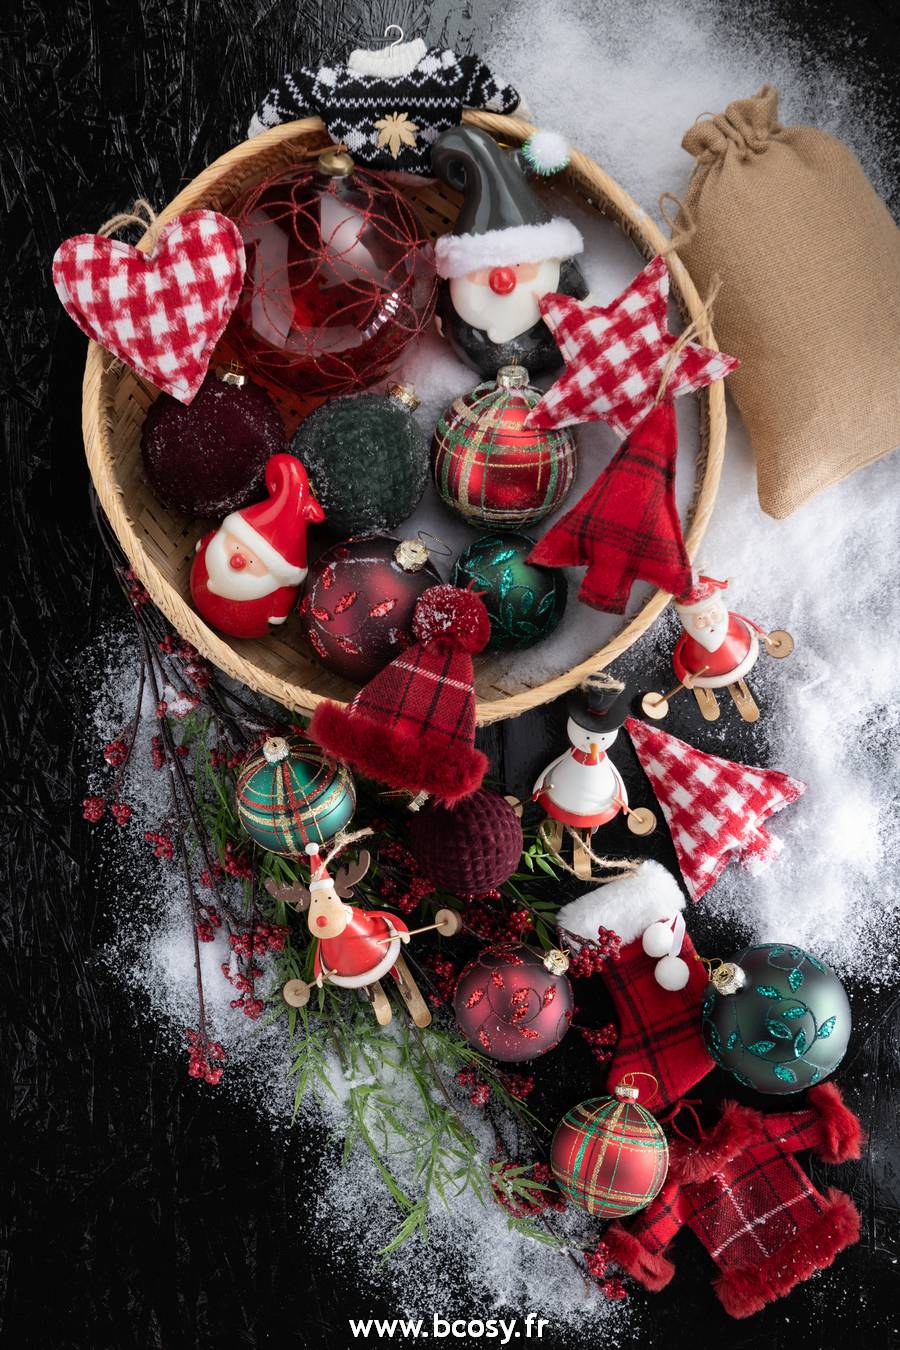 Boîte de rangement pour boules et décorations de Noël - 32